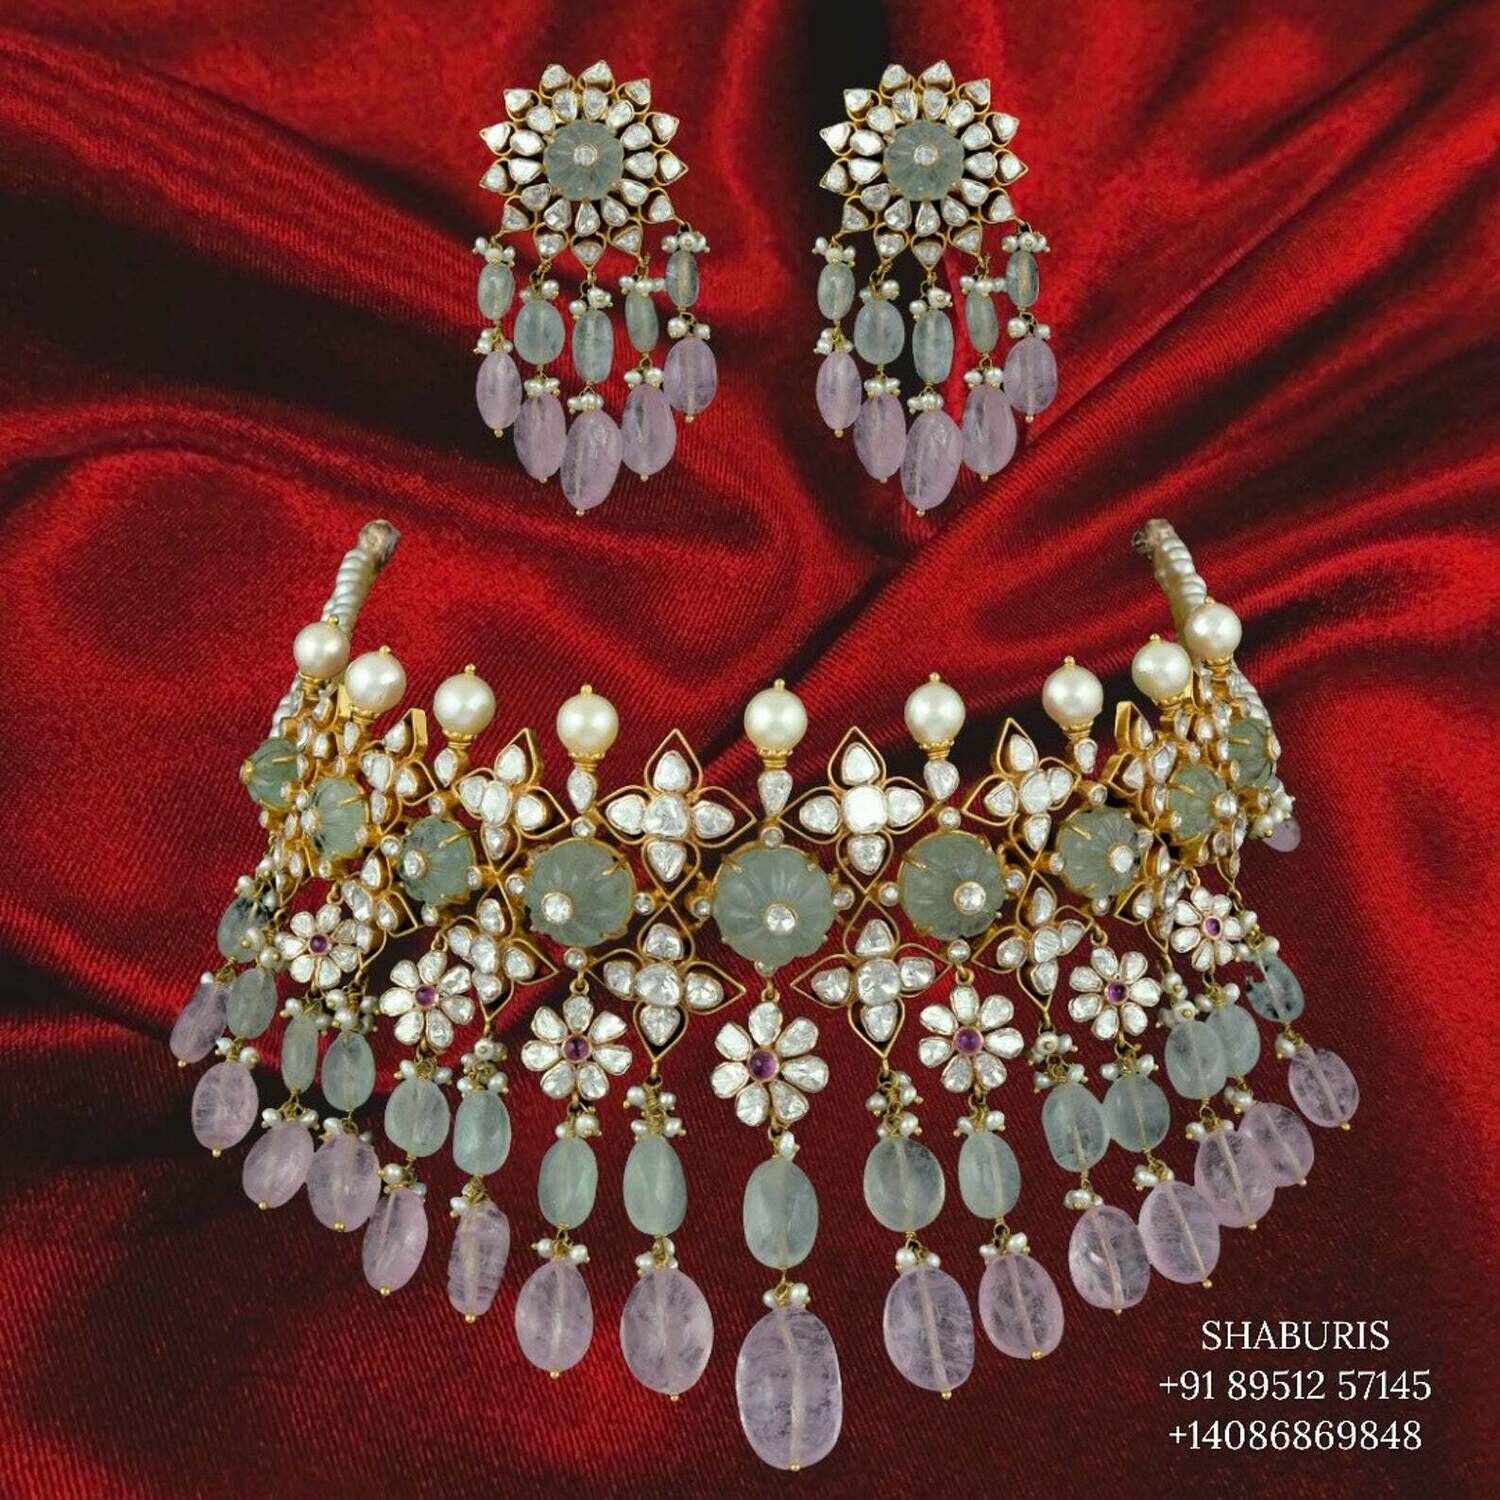 Polki necklaxe inspired designer silver jewelry, silver jewelry ,polki chandbali statement jewelry,polki earrings,diamond earrings -SHABURIS